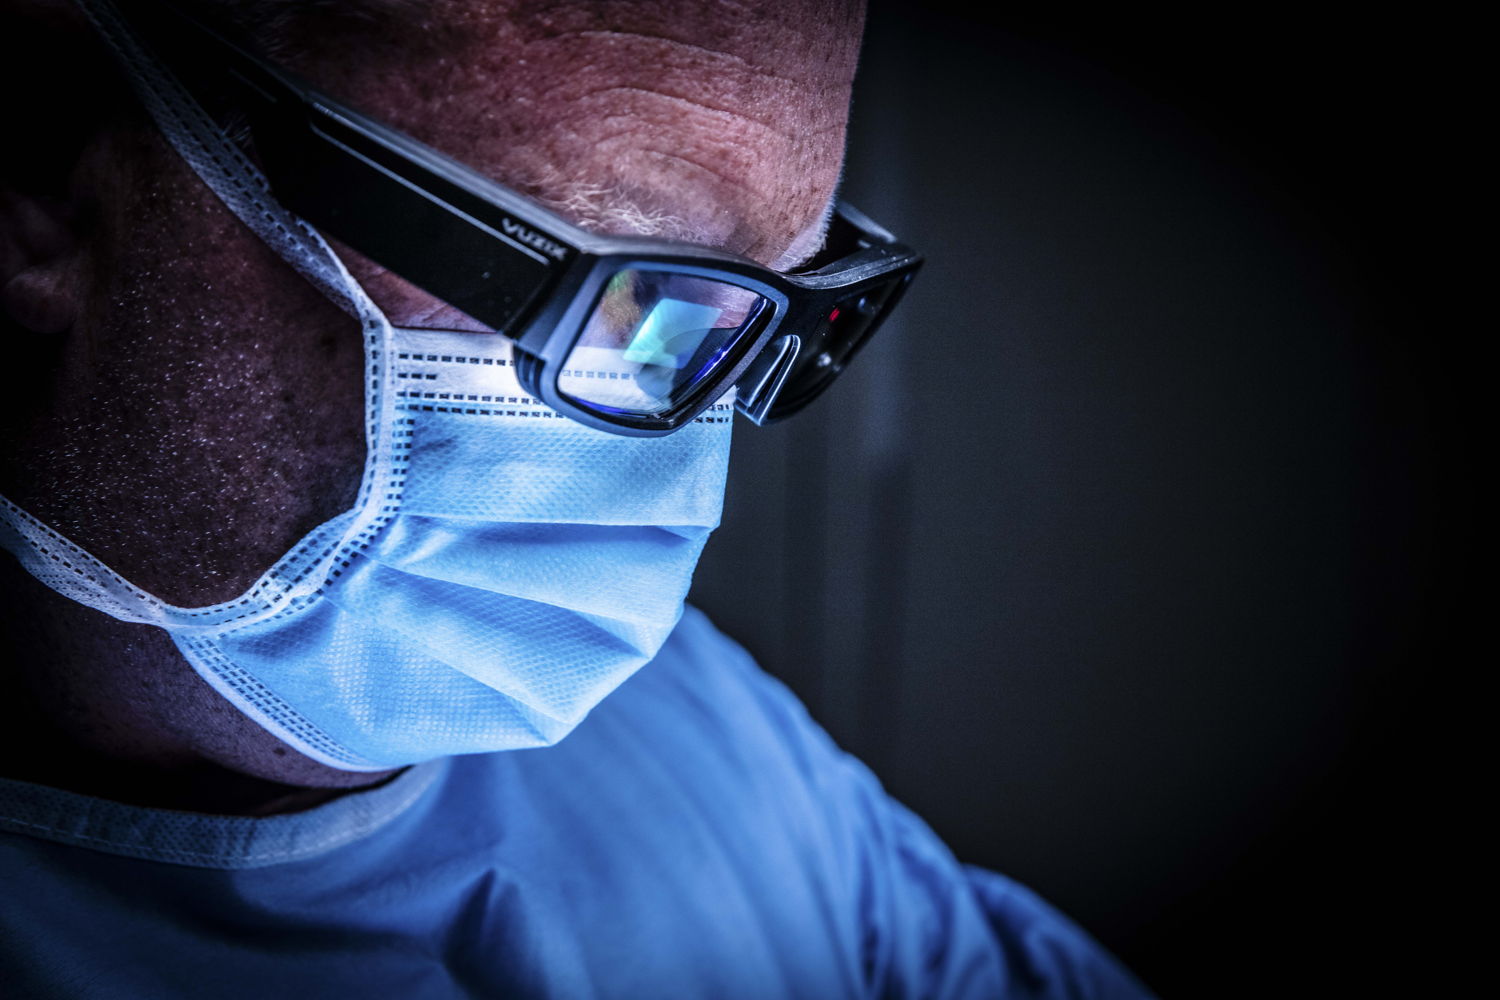 De augmented-reality-bril van NextAR toont de chirurg tijdens de ingreep extra informatie in real time en 3D over de knie en weke delen. (Credit:  Ziekenhuis Netwerk Antwerpen / Dirk Kestens)